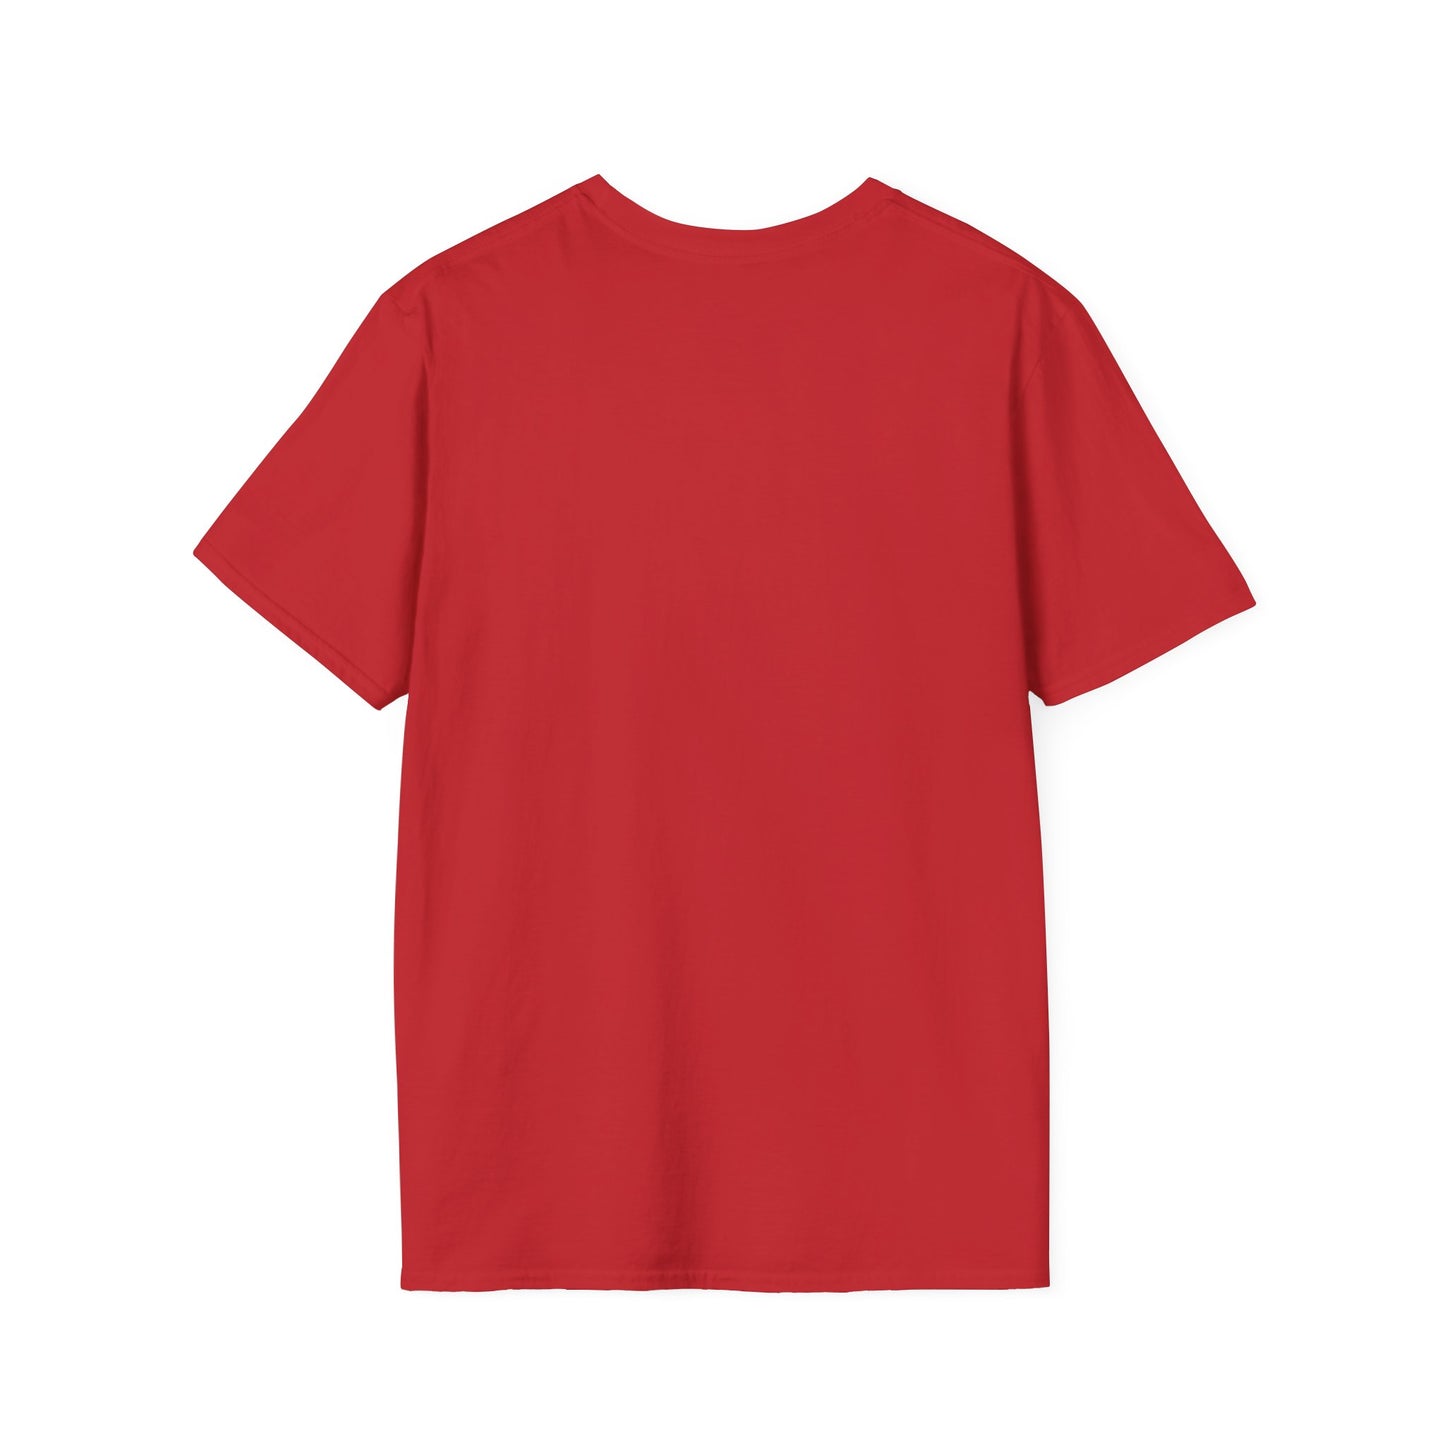 Little Sonics (Adult T-Shirt)